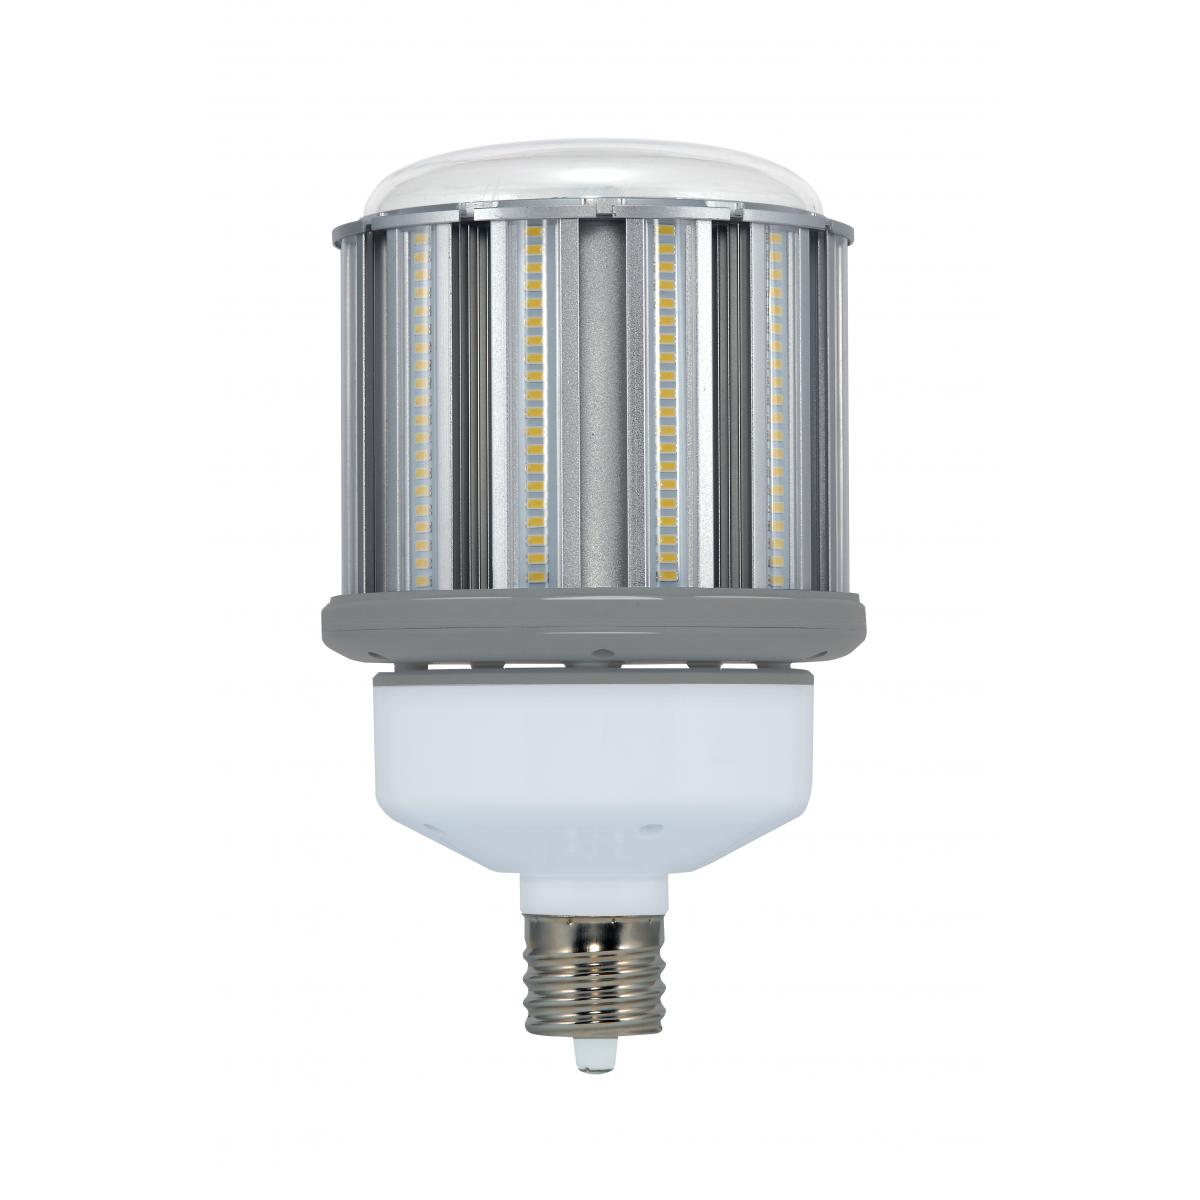 400 Watt 7000 Lumens Hi-Pro Spiral CFL Bright White 4100K Medium Base 120 Volt Light Bulb Satco S7376 105 Watt 